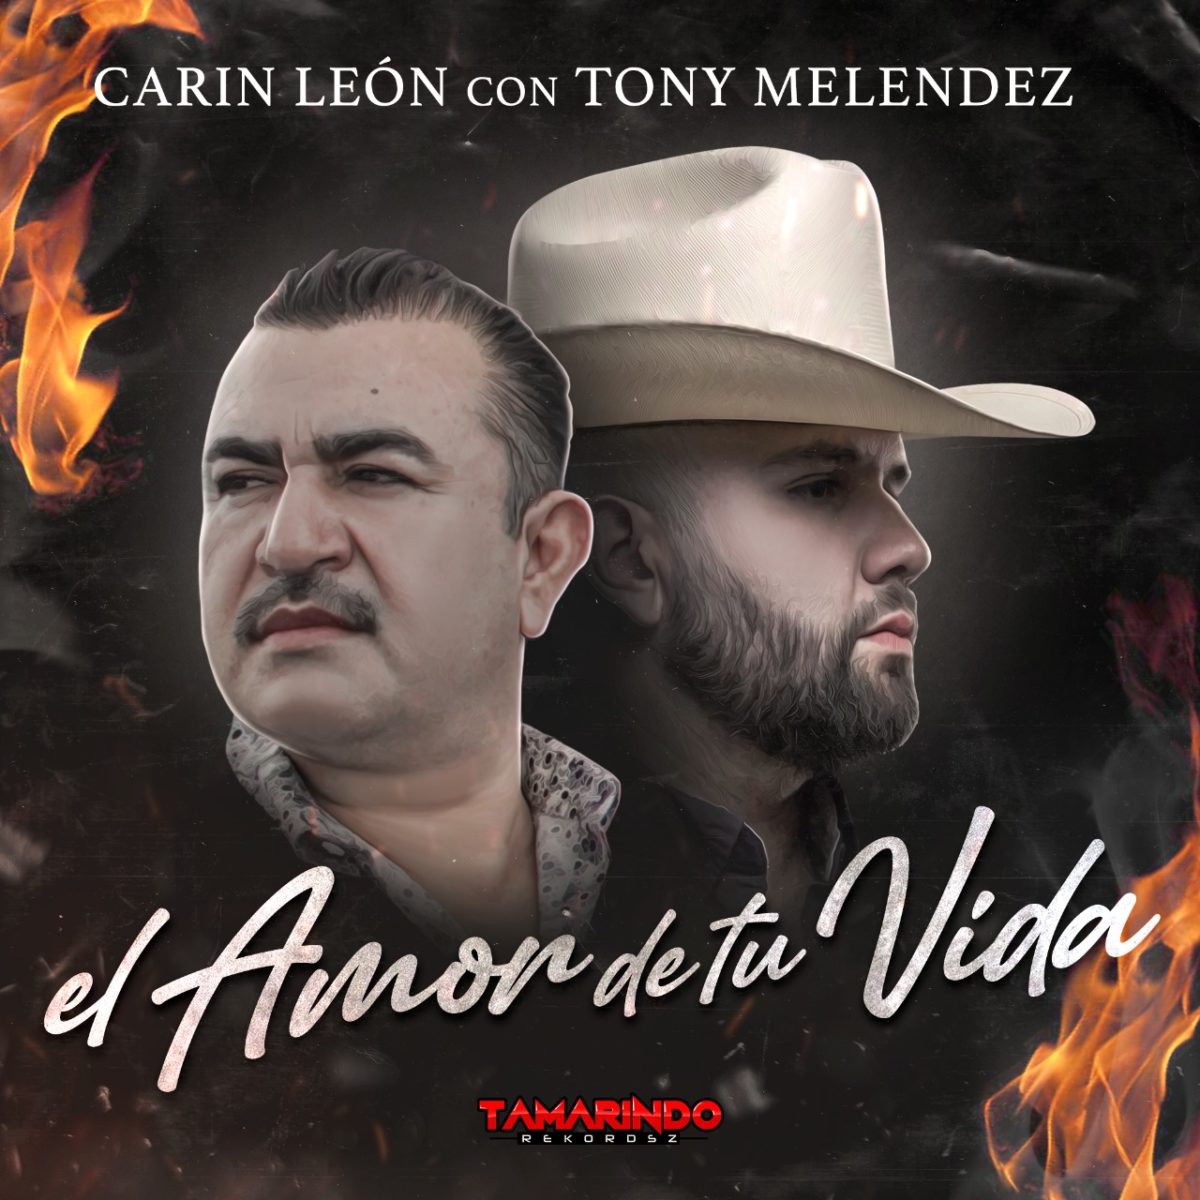 Carin León y Tony Meléndez hacen espectacular dueto ‘El amor de tu vida’